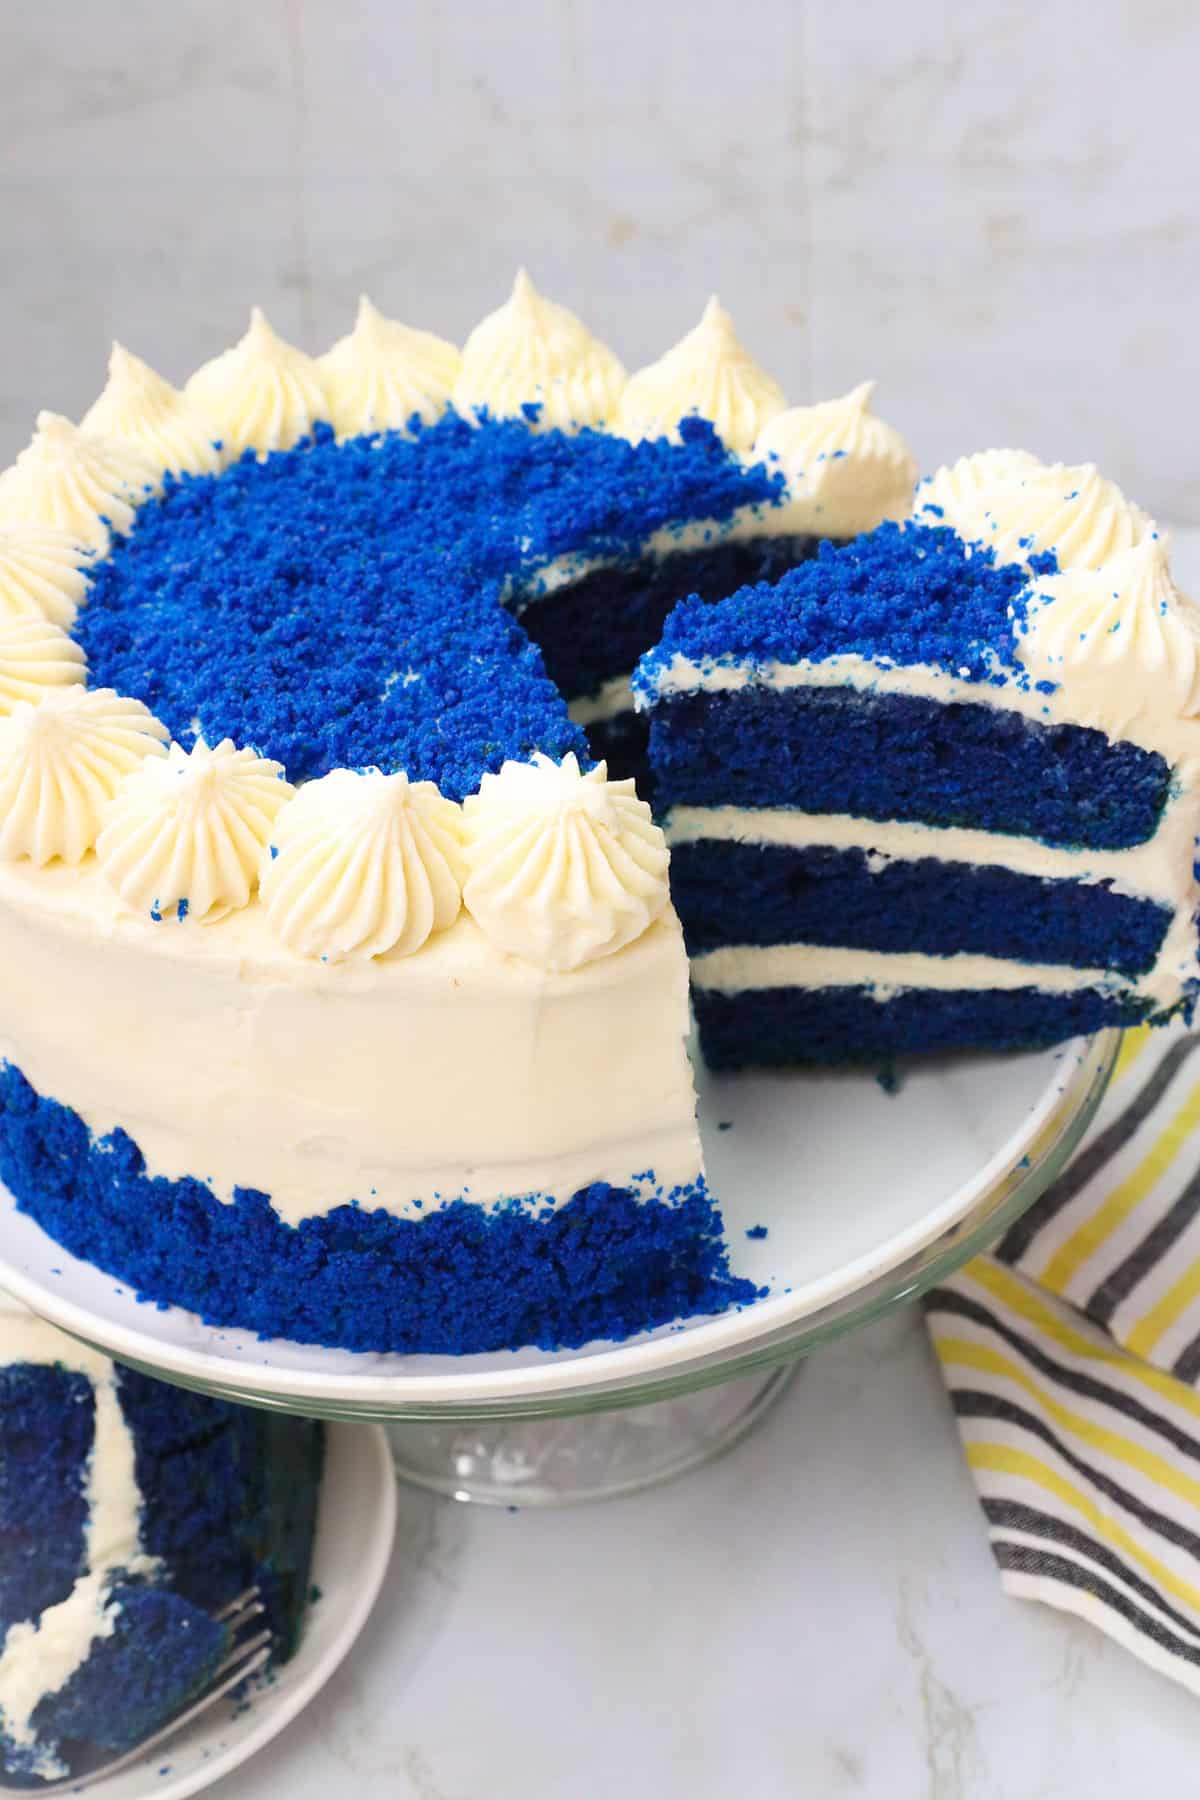 Serving a gorgeous slice of Blue Velvet Cake